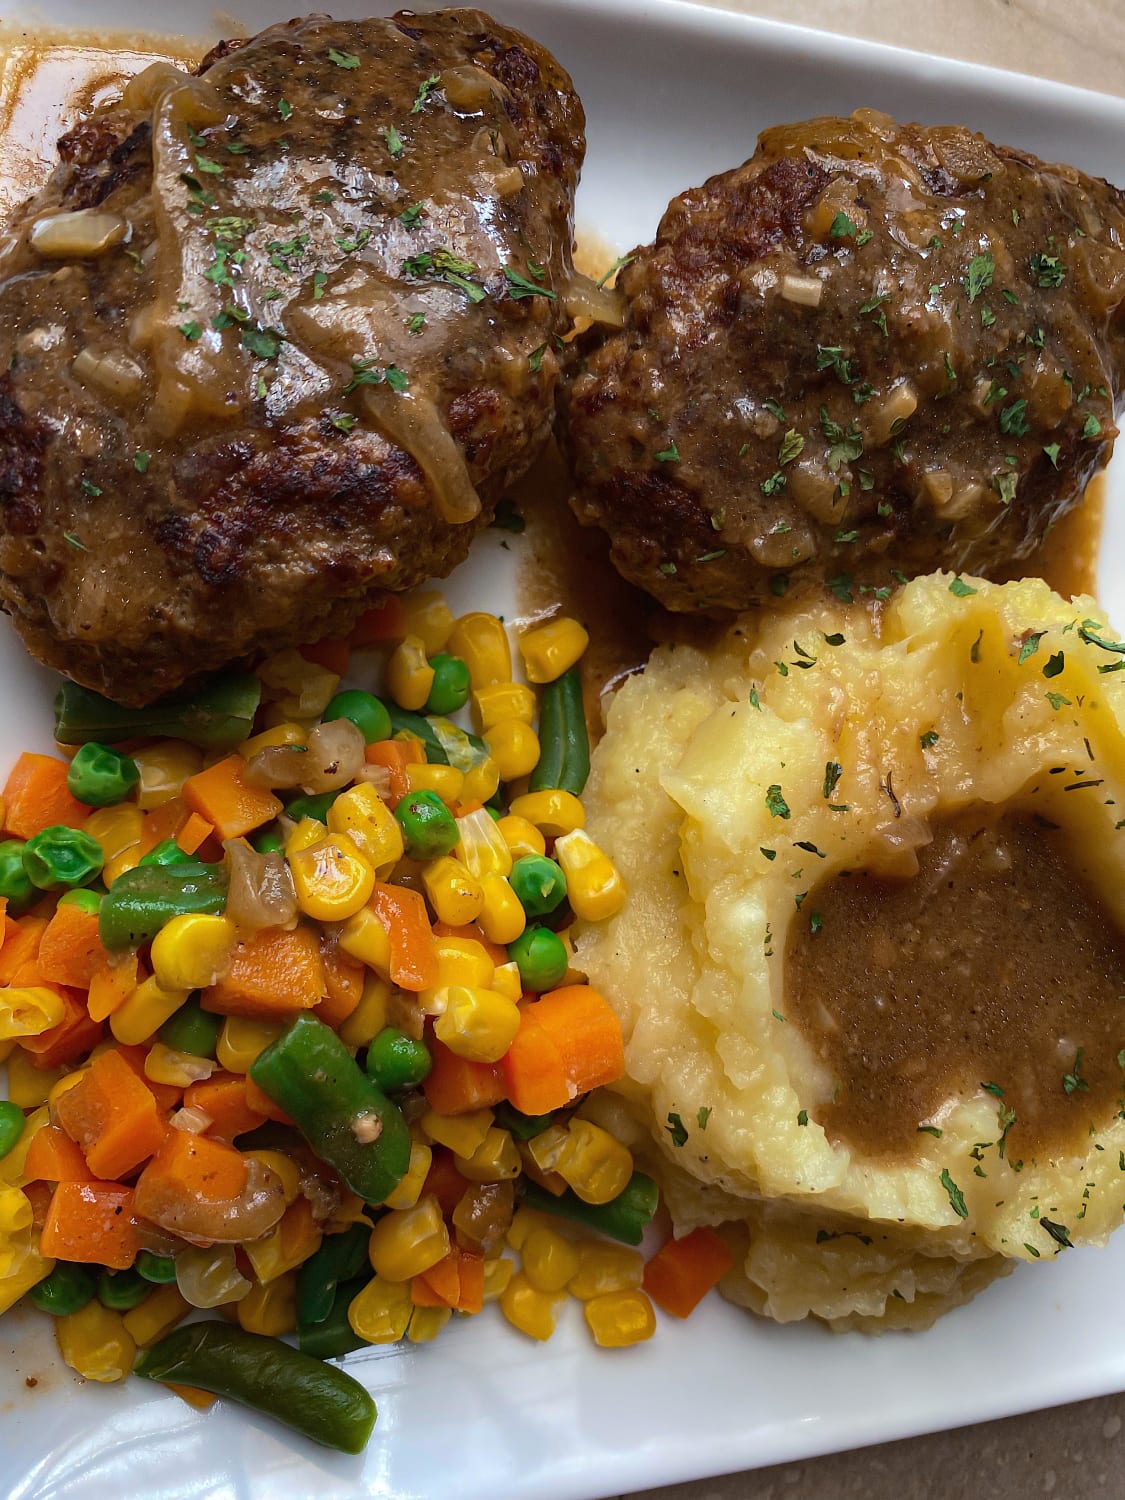 [Homemade] Salisbury steak with mash and veggies